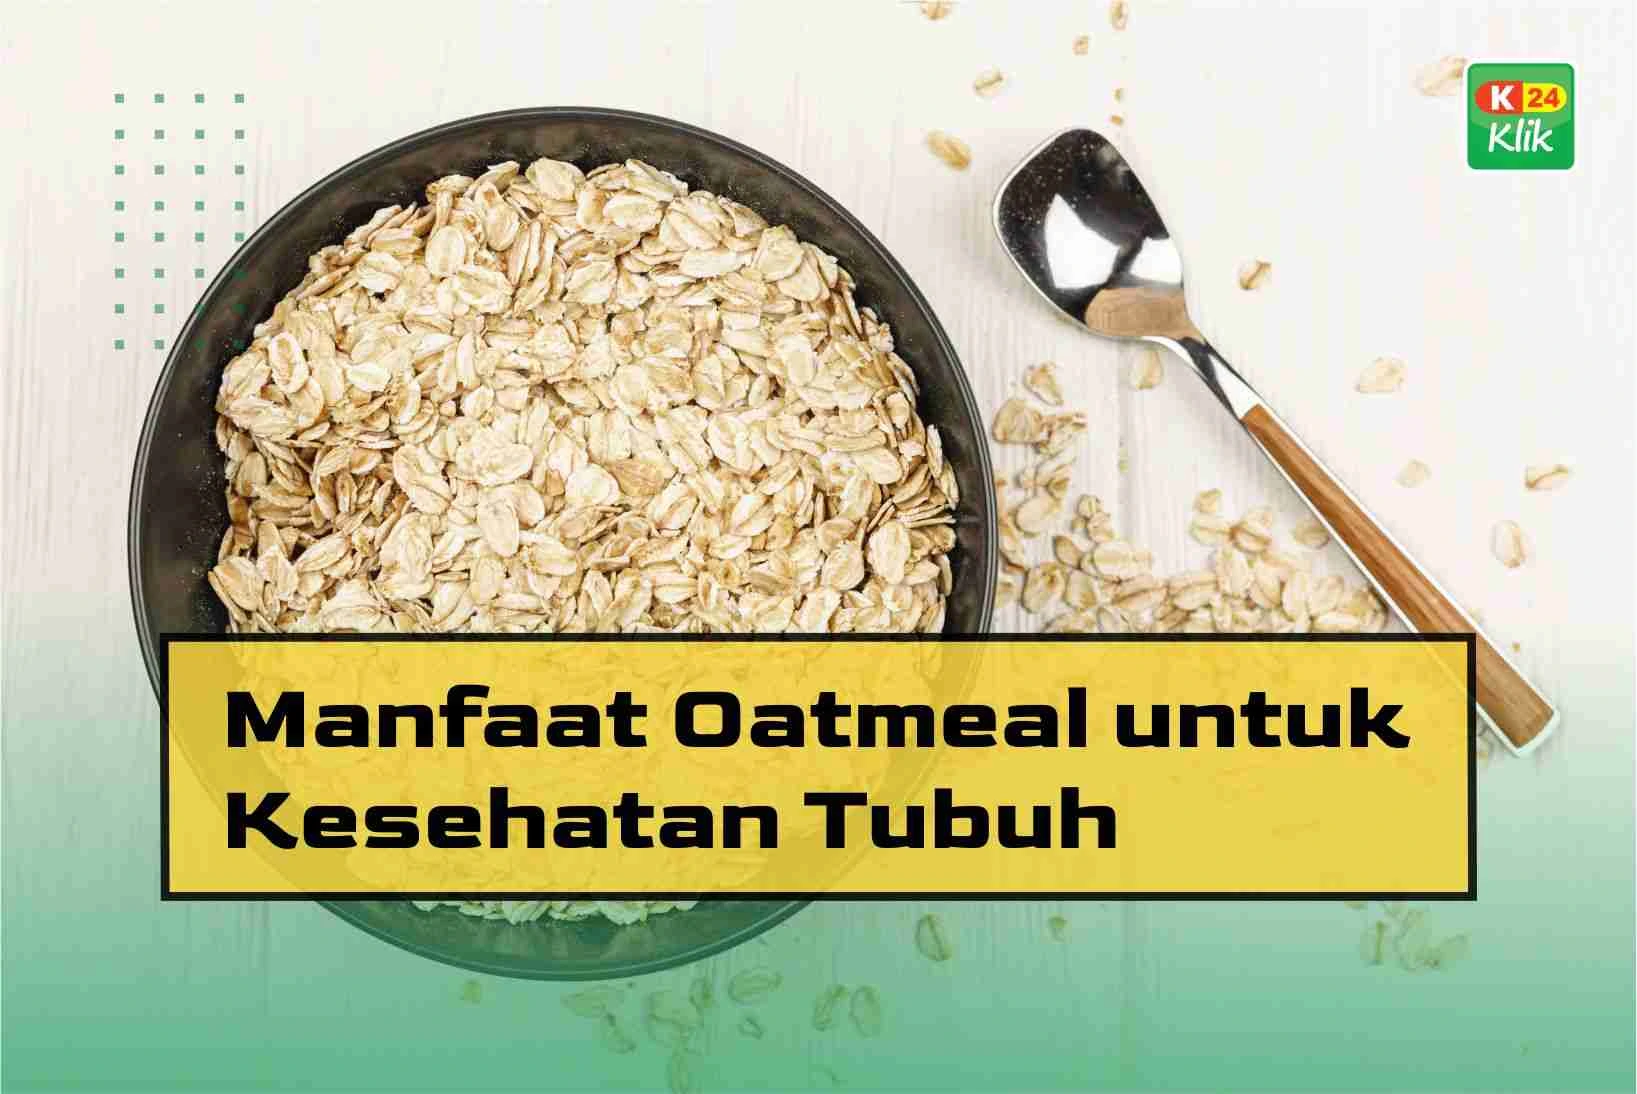 manfaat oatmeal untuk kesehatan tubuh